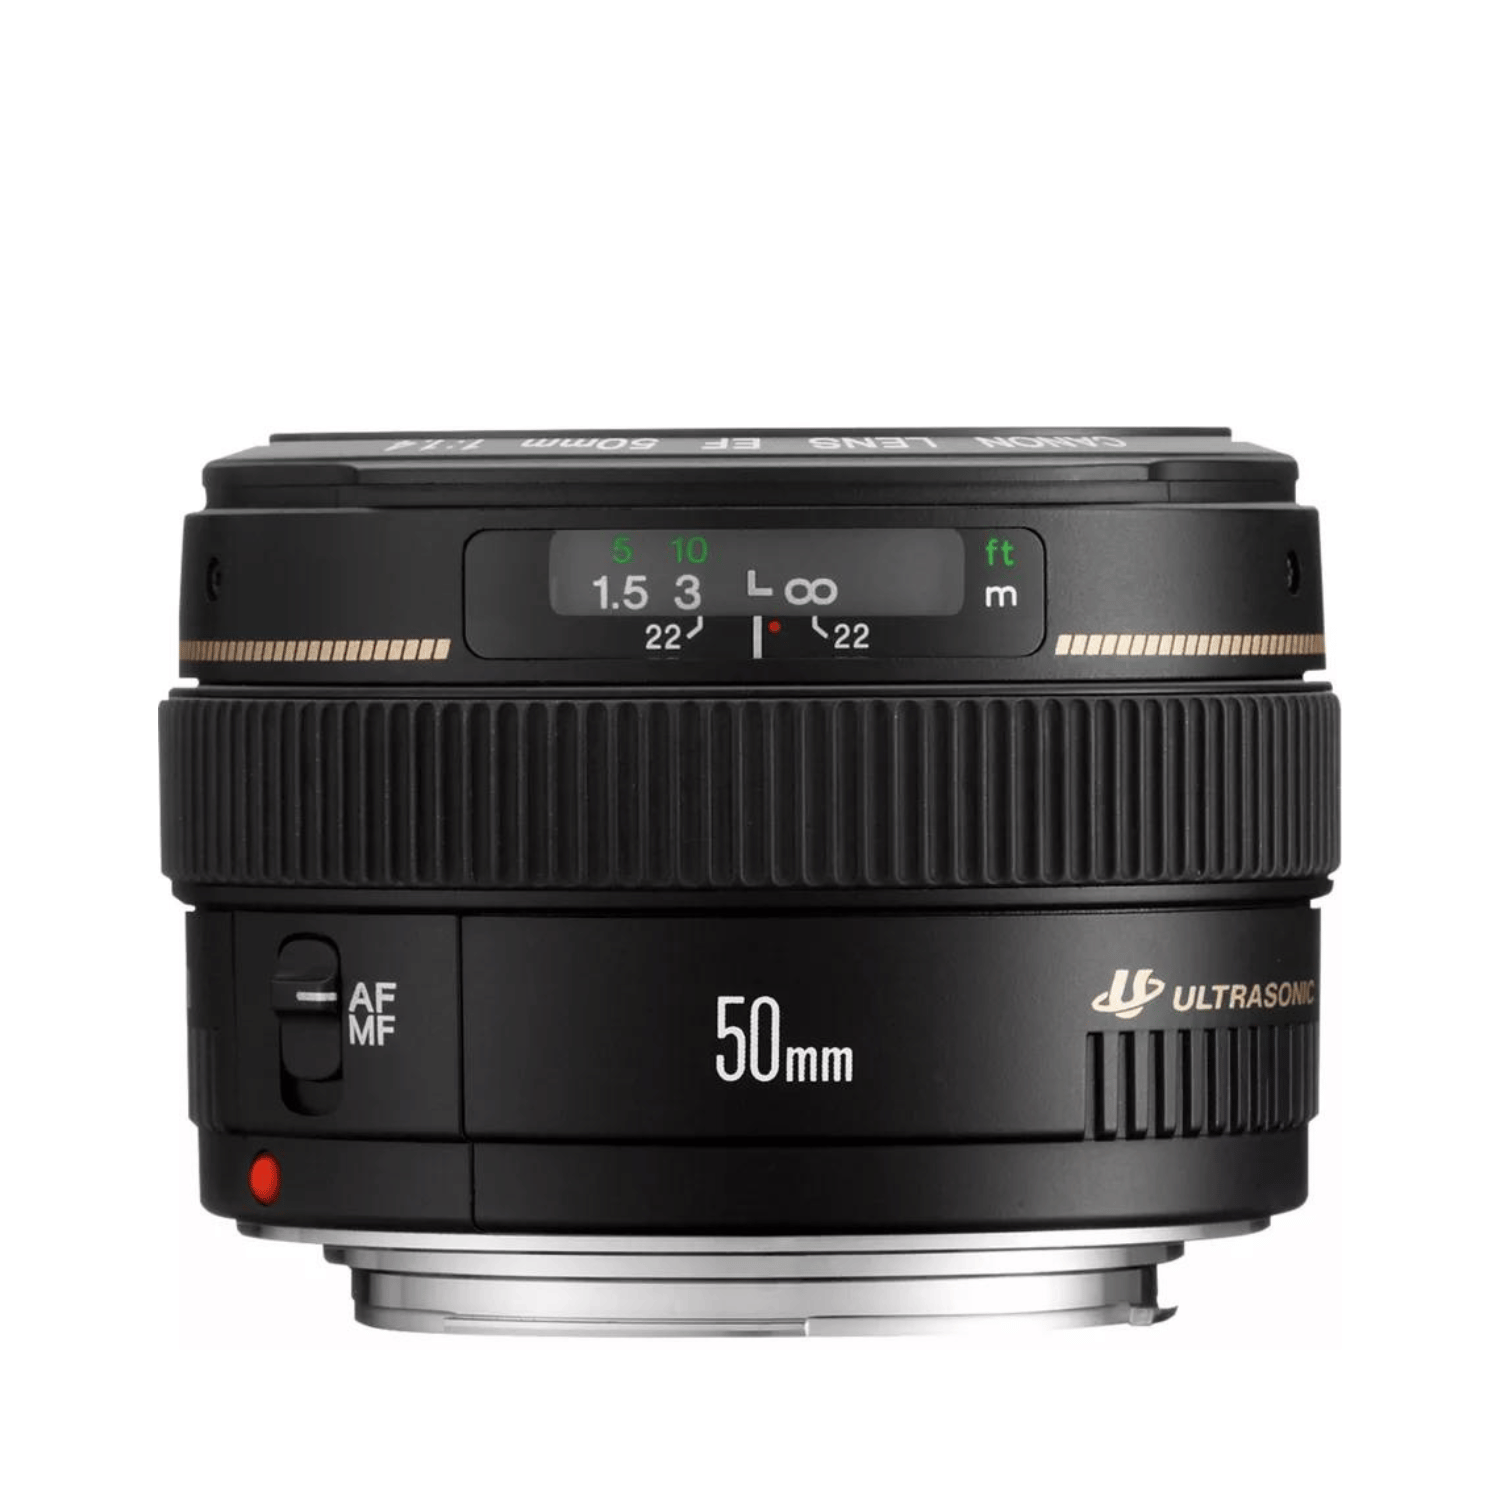 Canon EF 50mm f1.4 USM - Gar. Canon Italia -Cine Sud è da 47 anni sul mercato! 2515A012